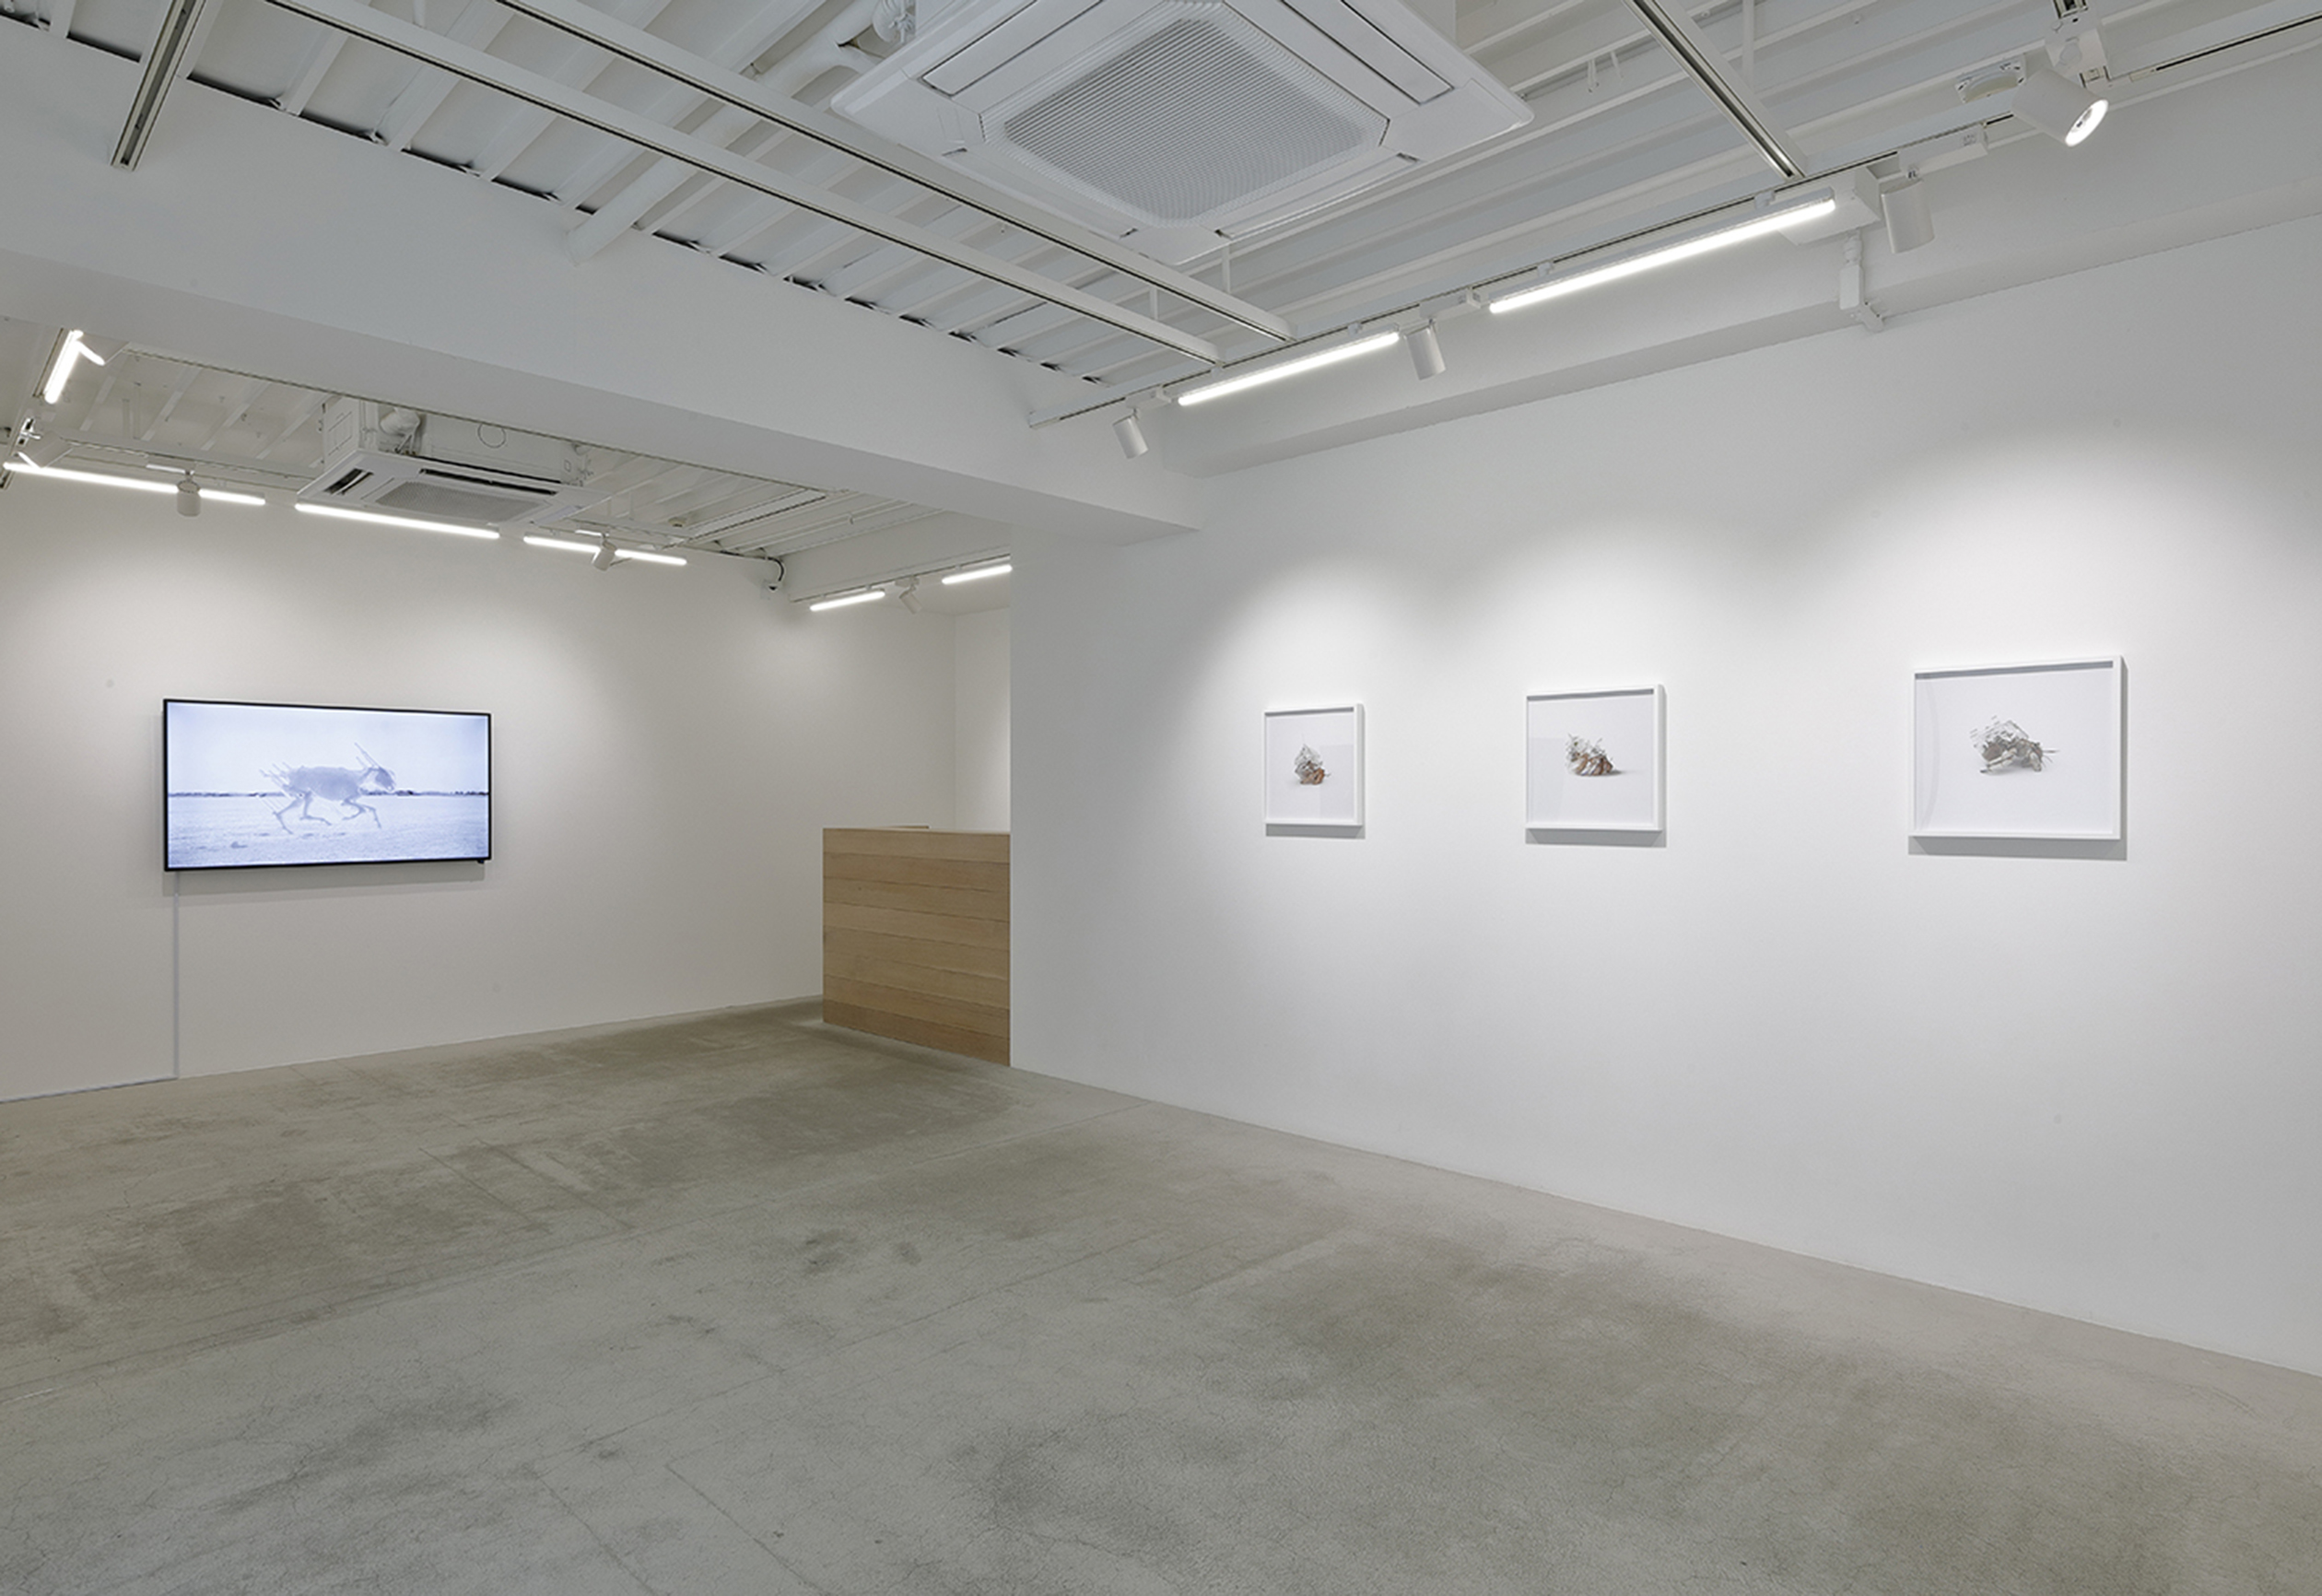 Exhibit: Installation view, 2008-2018